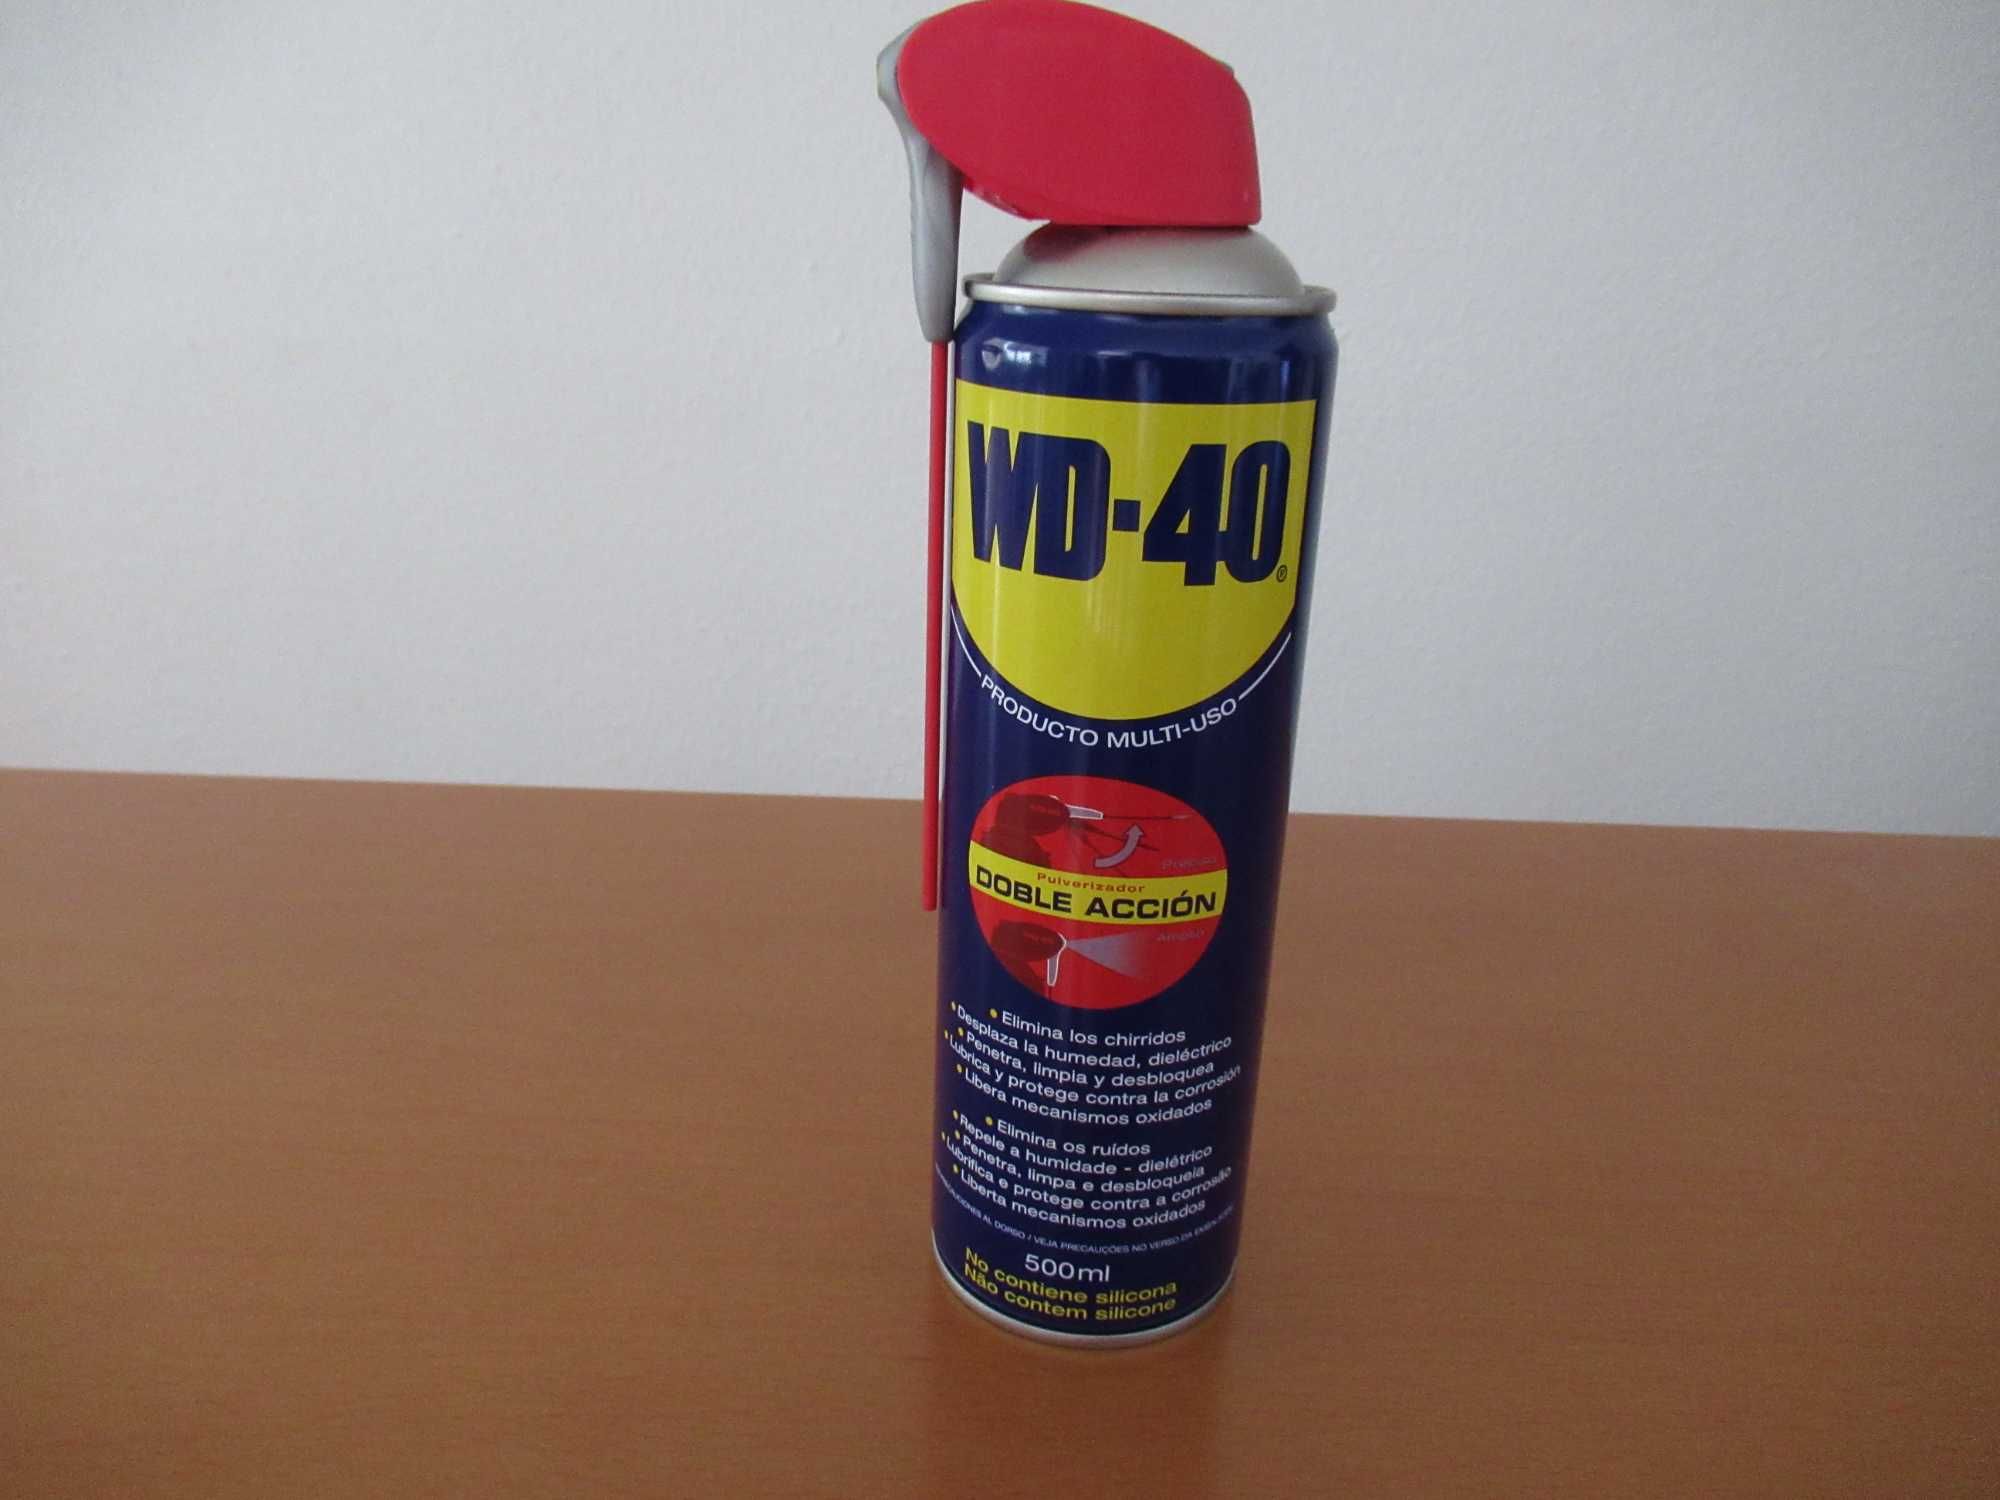 Spray Lubrificante Dupla Ação 500ml
WD40